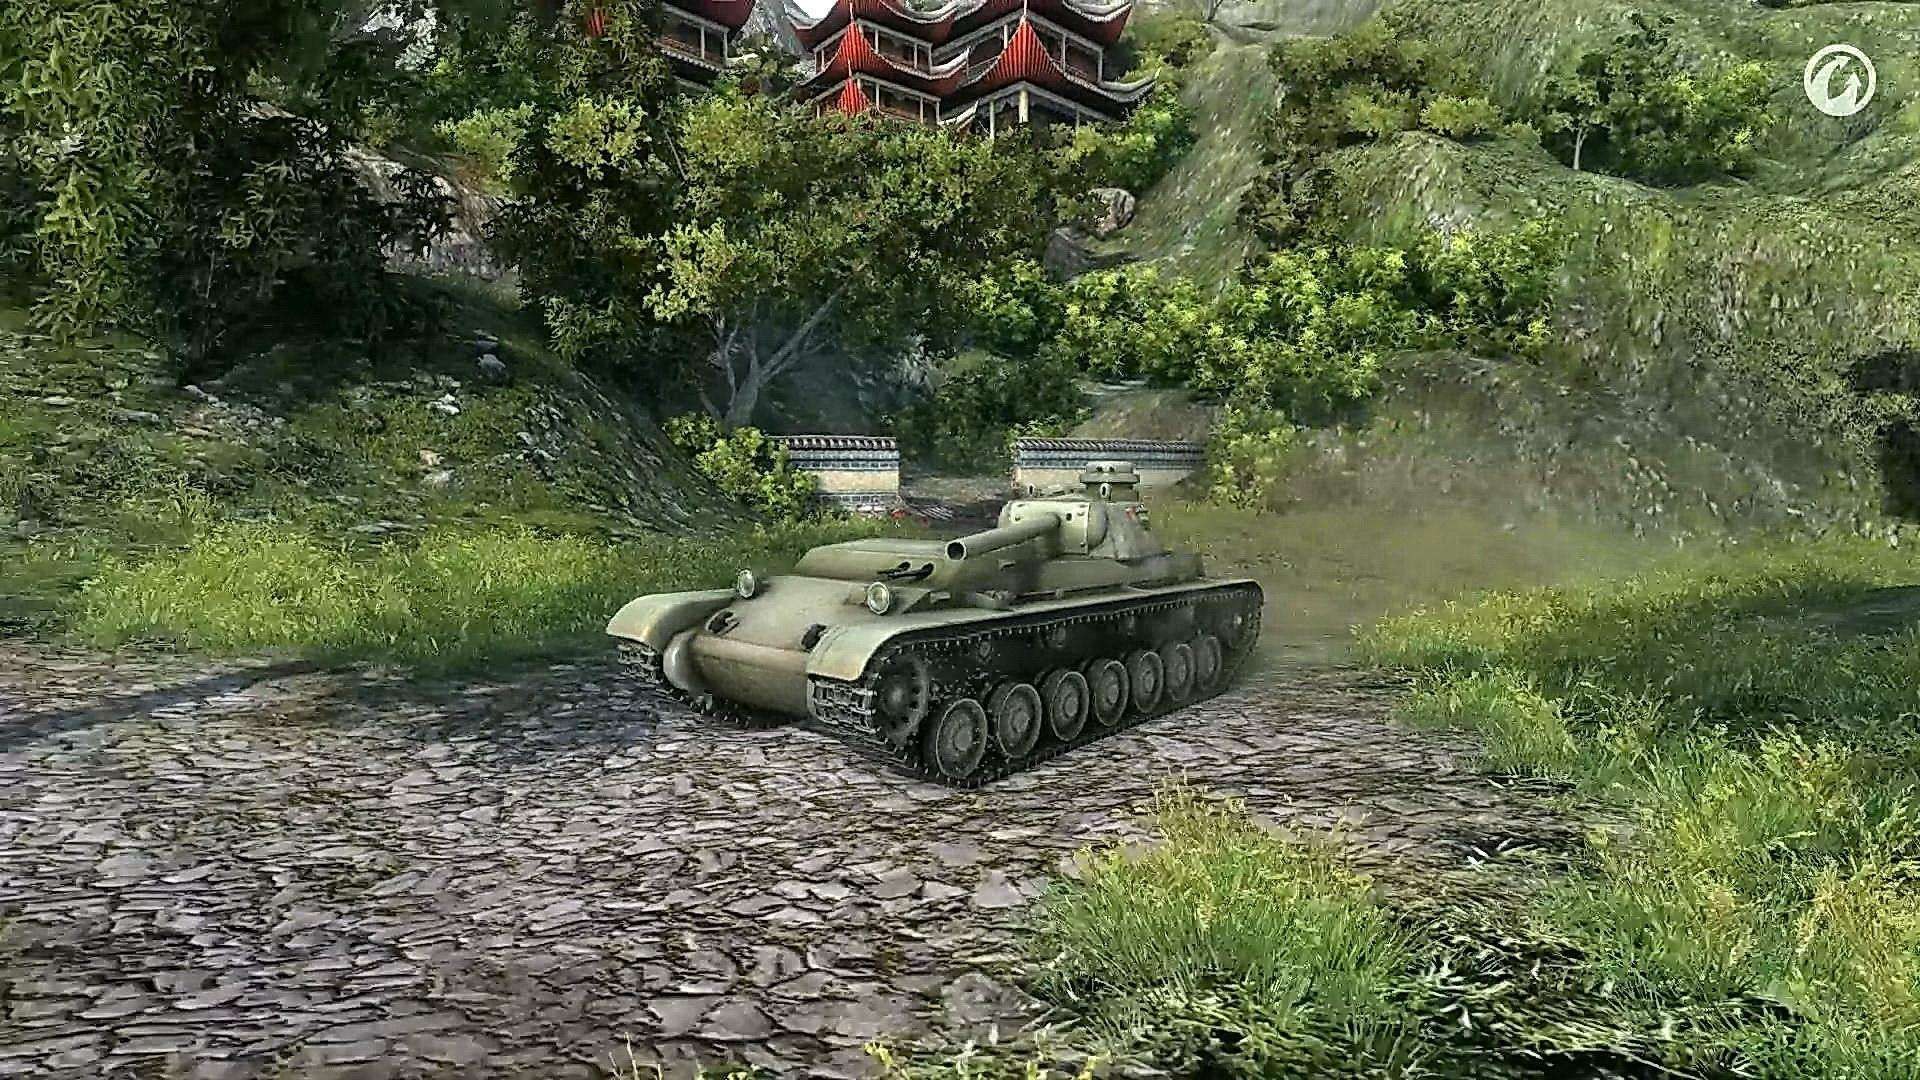 Wot 44. Танк 44. А-44 танк WOT. Т44 танк. Броня а 44.